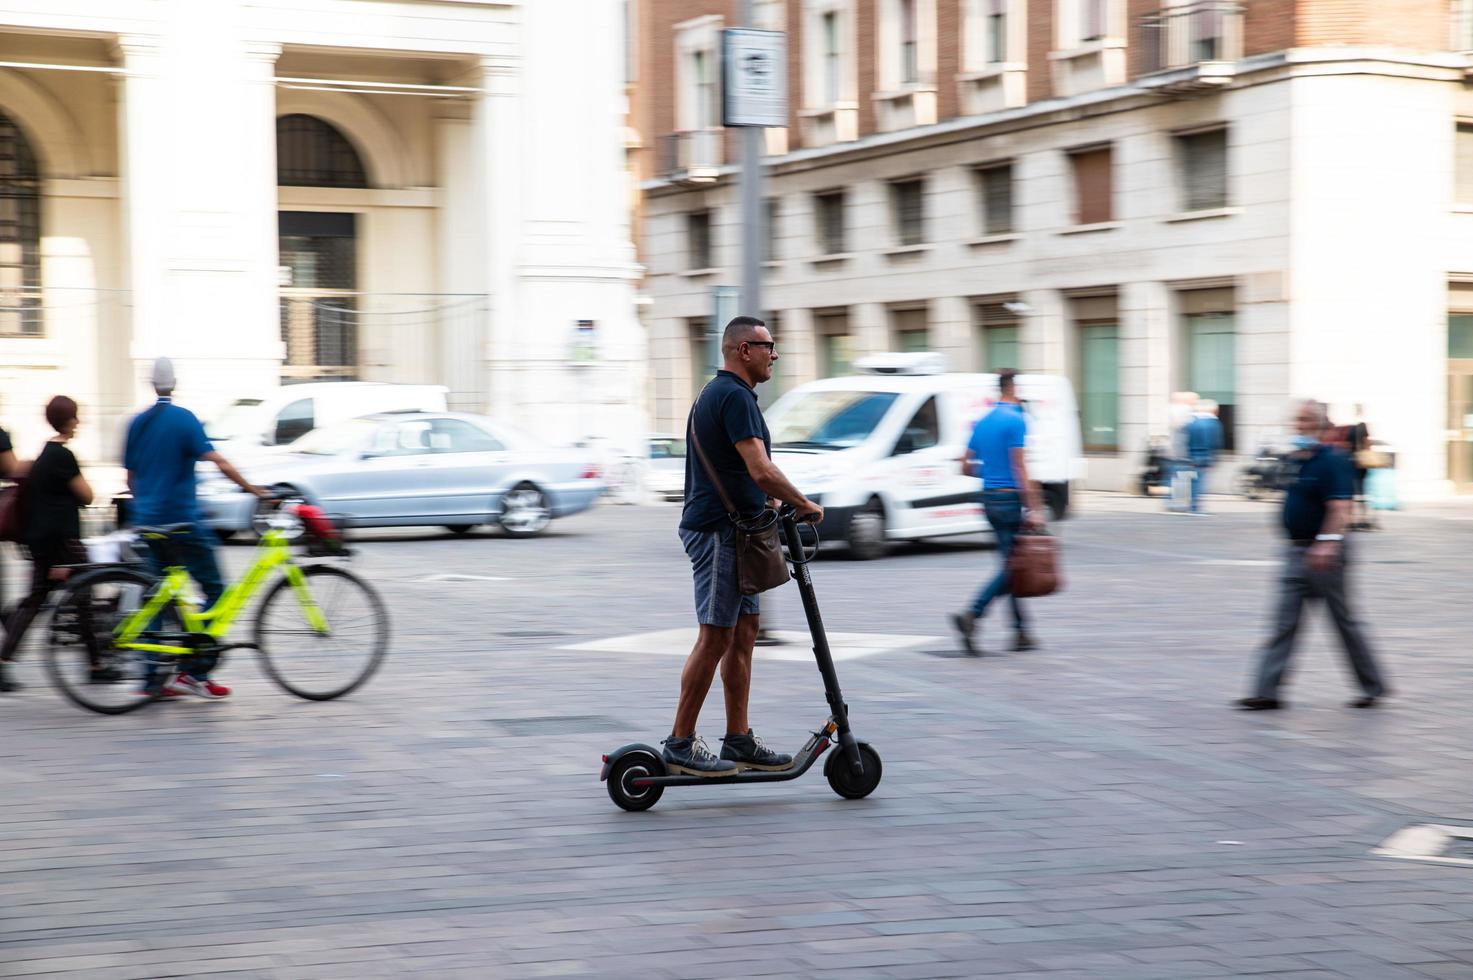 terni, italie, 29 sept. 2021 - personne sur un scooter dans la ville photo